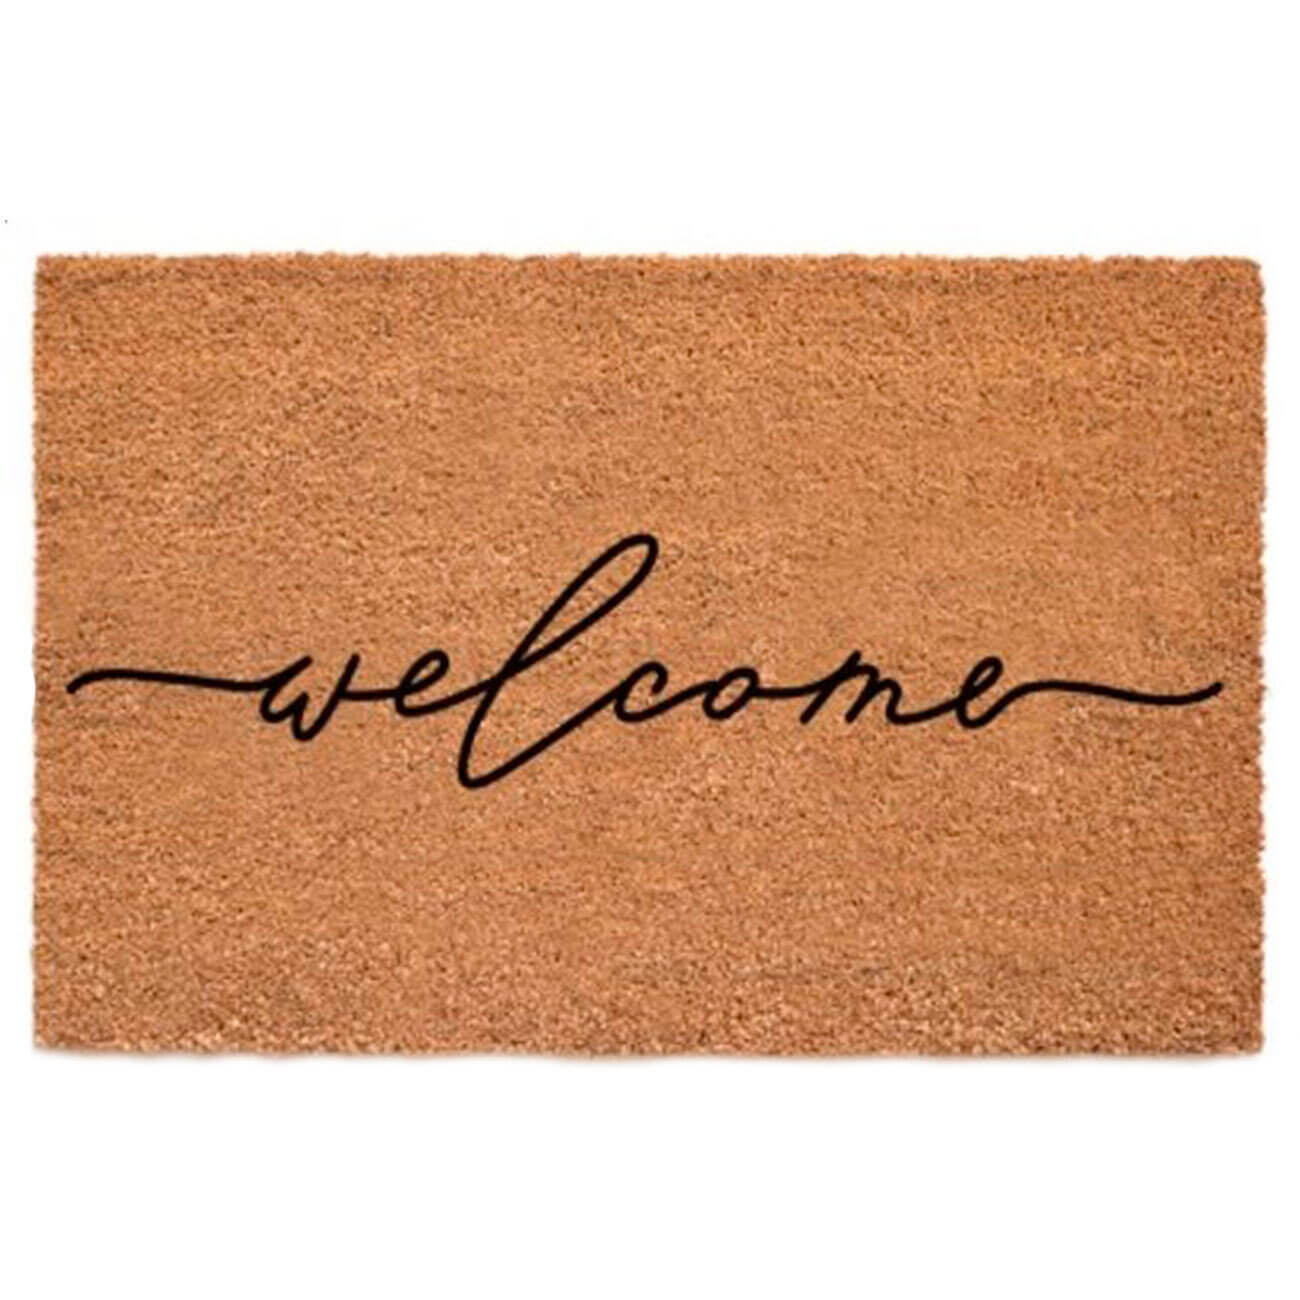 Коврик придверный, 45х75 см, кокос/пвх, коричневый, Welcome, Home deco коврик inspire rubesto welcome в 45x75 см резина